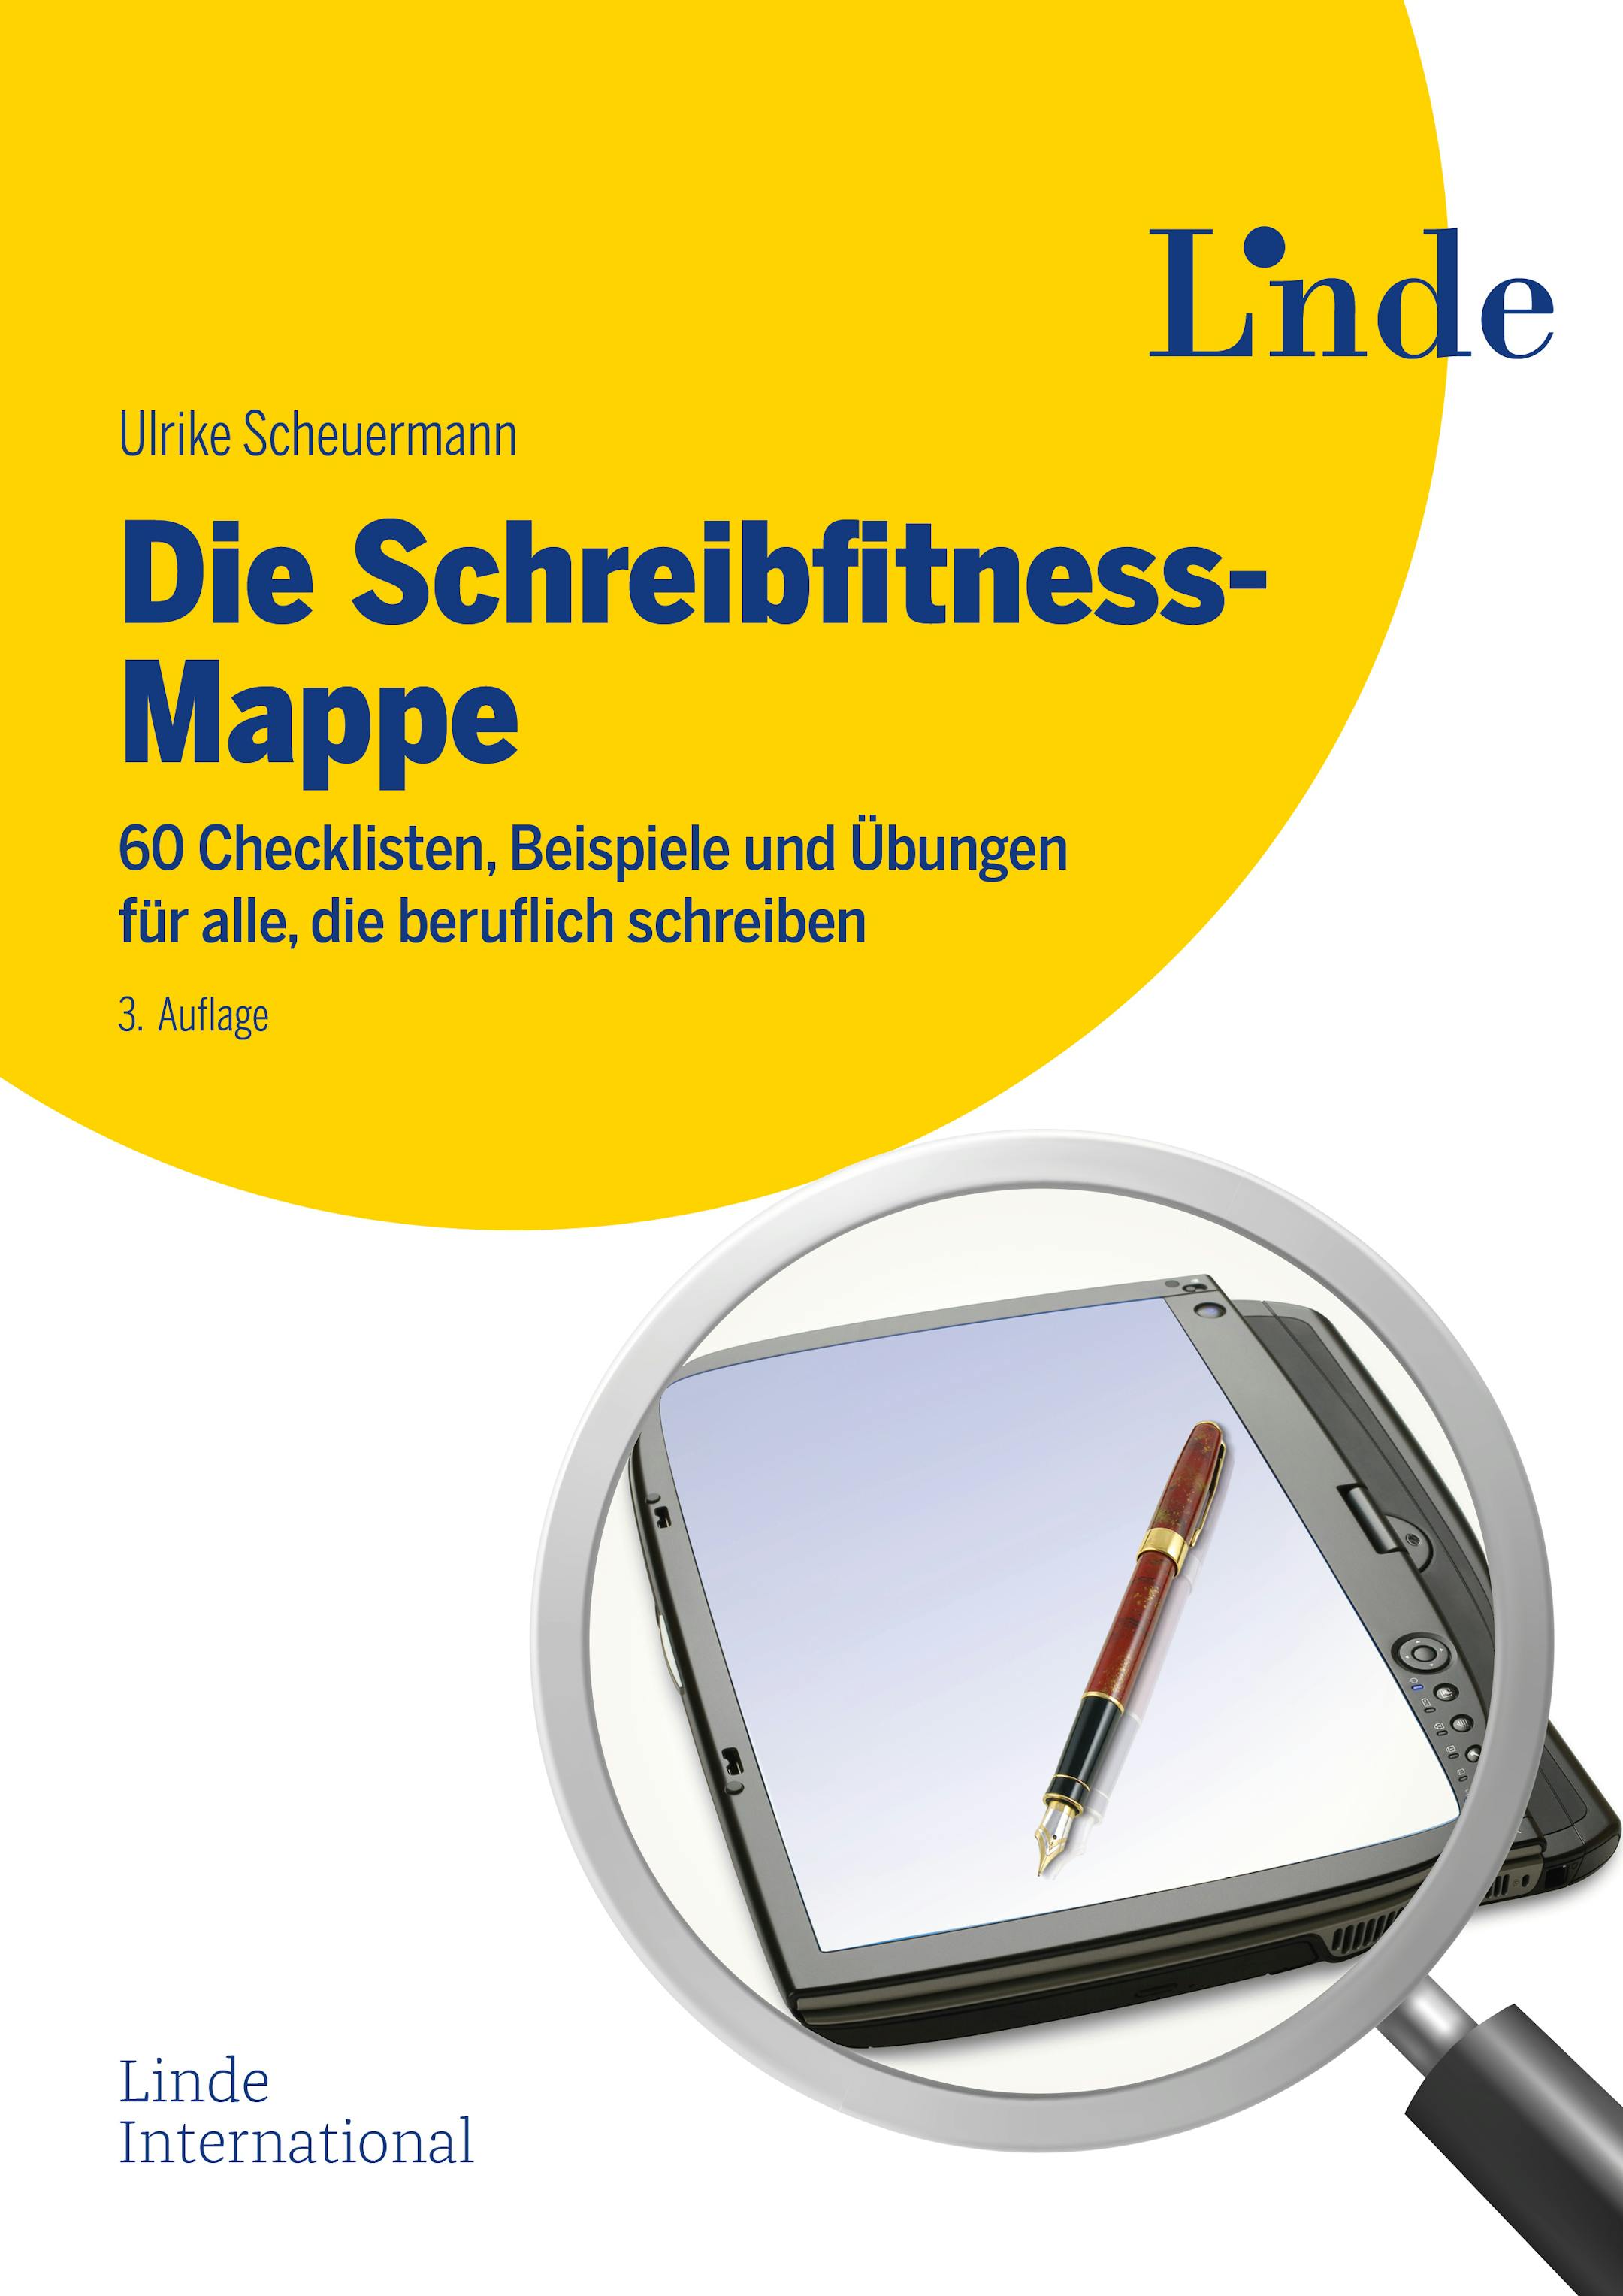 Scheuermann
Die Schreibfitness-Mappe
60 Checklisten, Beispiele und Übungen für alle, die beruflich schreiben